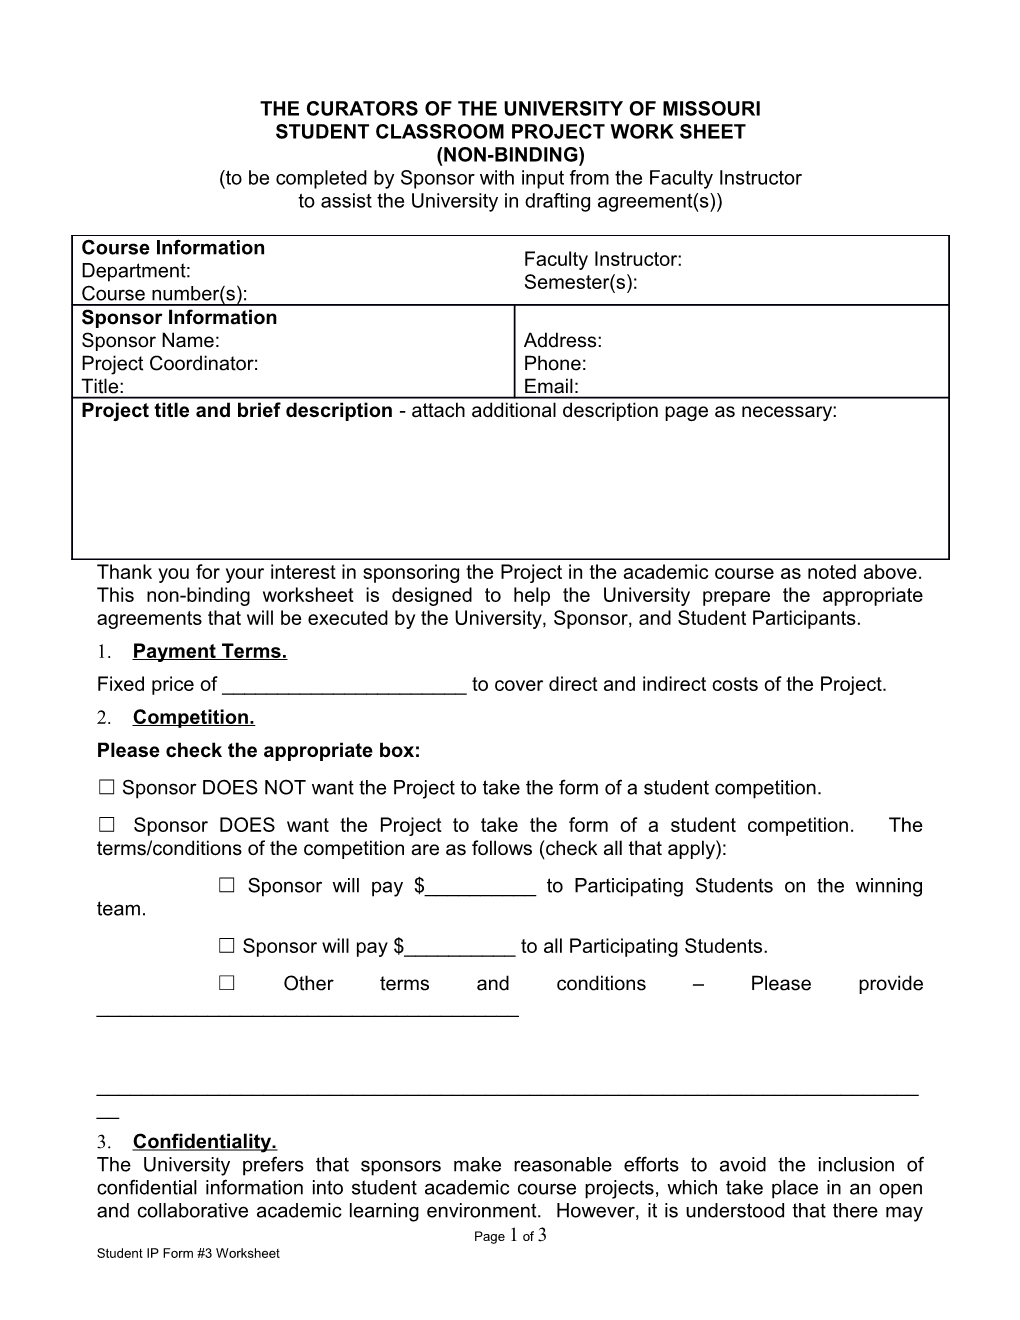 Student IP Form #3 Worksheet